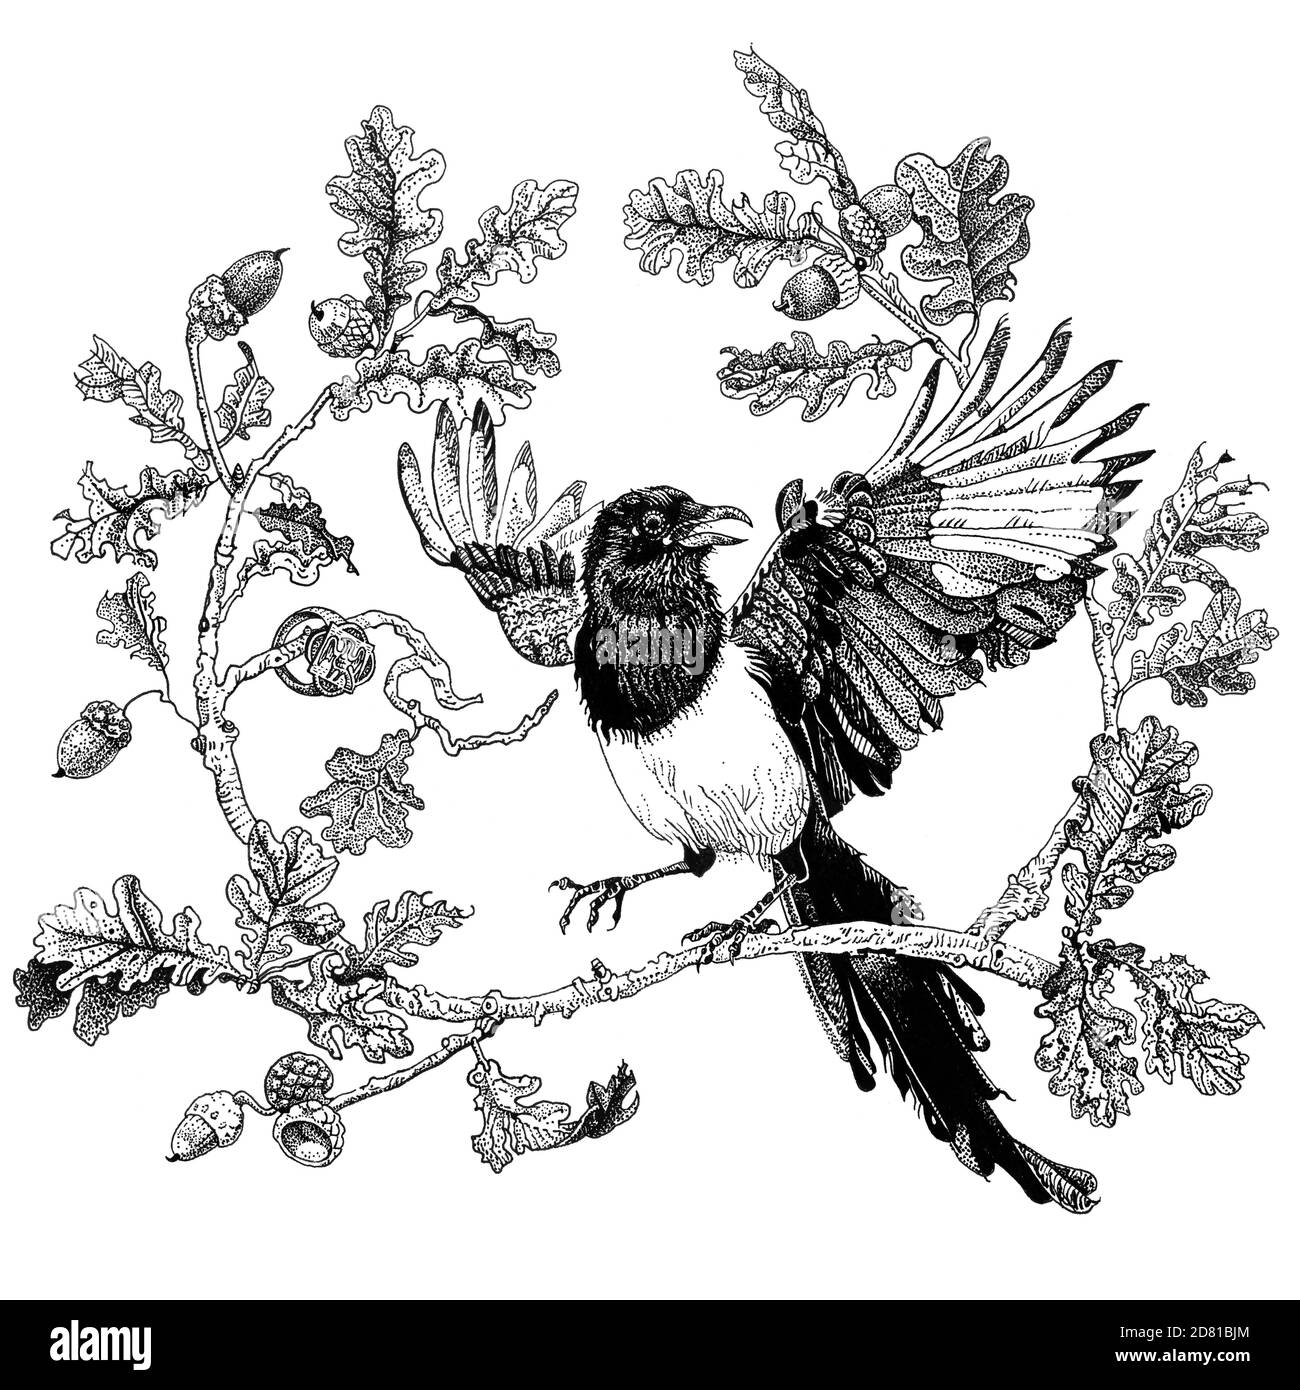 Magpie sur une branche de chêne. Oiseau rabats ses ailes. Illustration de stylo à encre détaillée dessinée à la main, isolée en noir sur blanc. Imprimé t-shirt, motif tatouage Banque D'Images